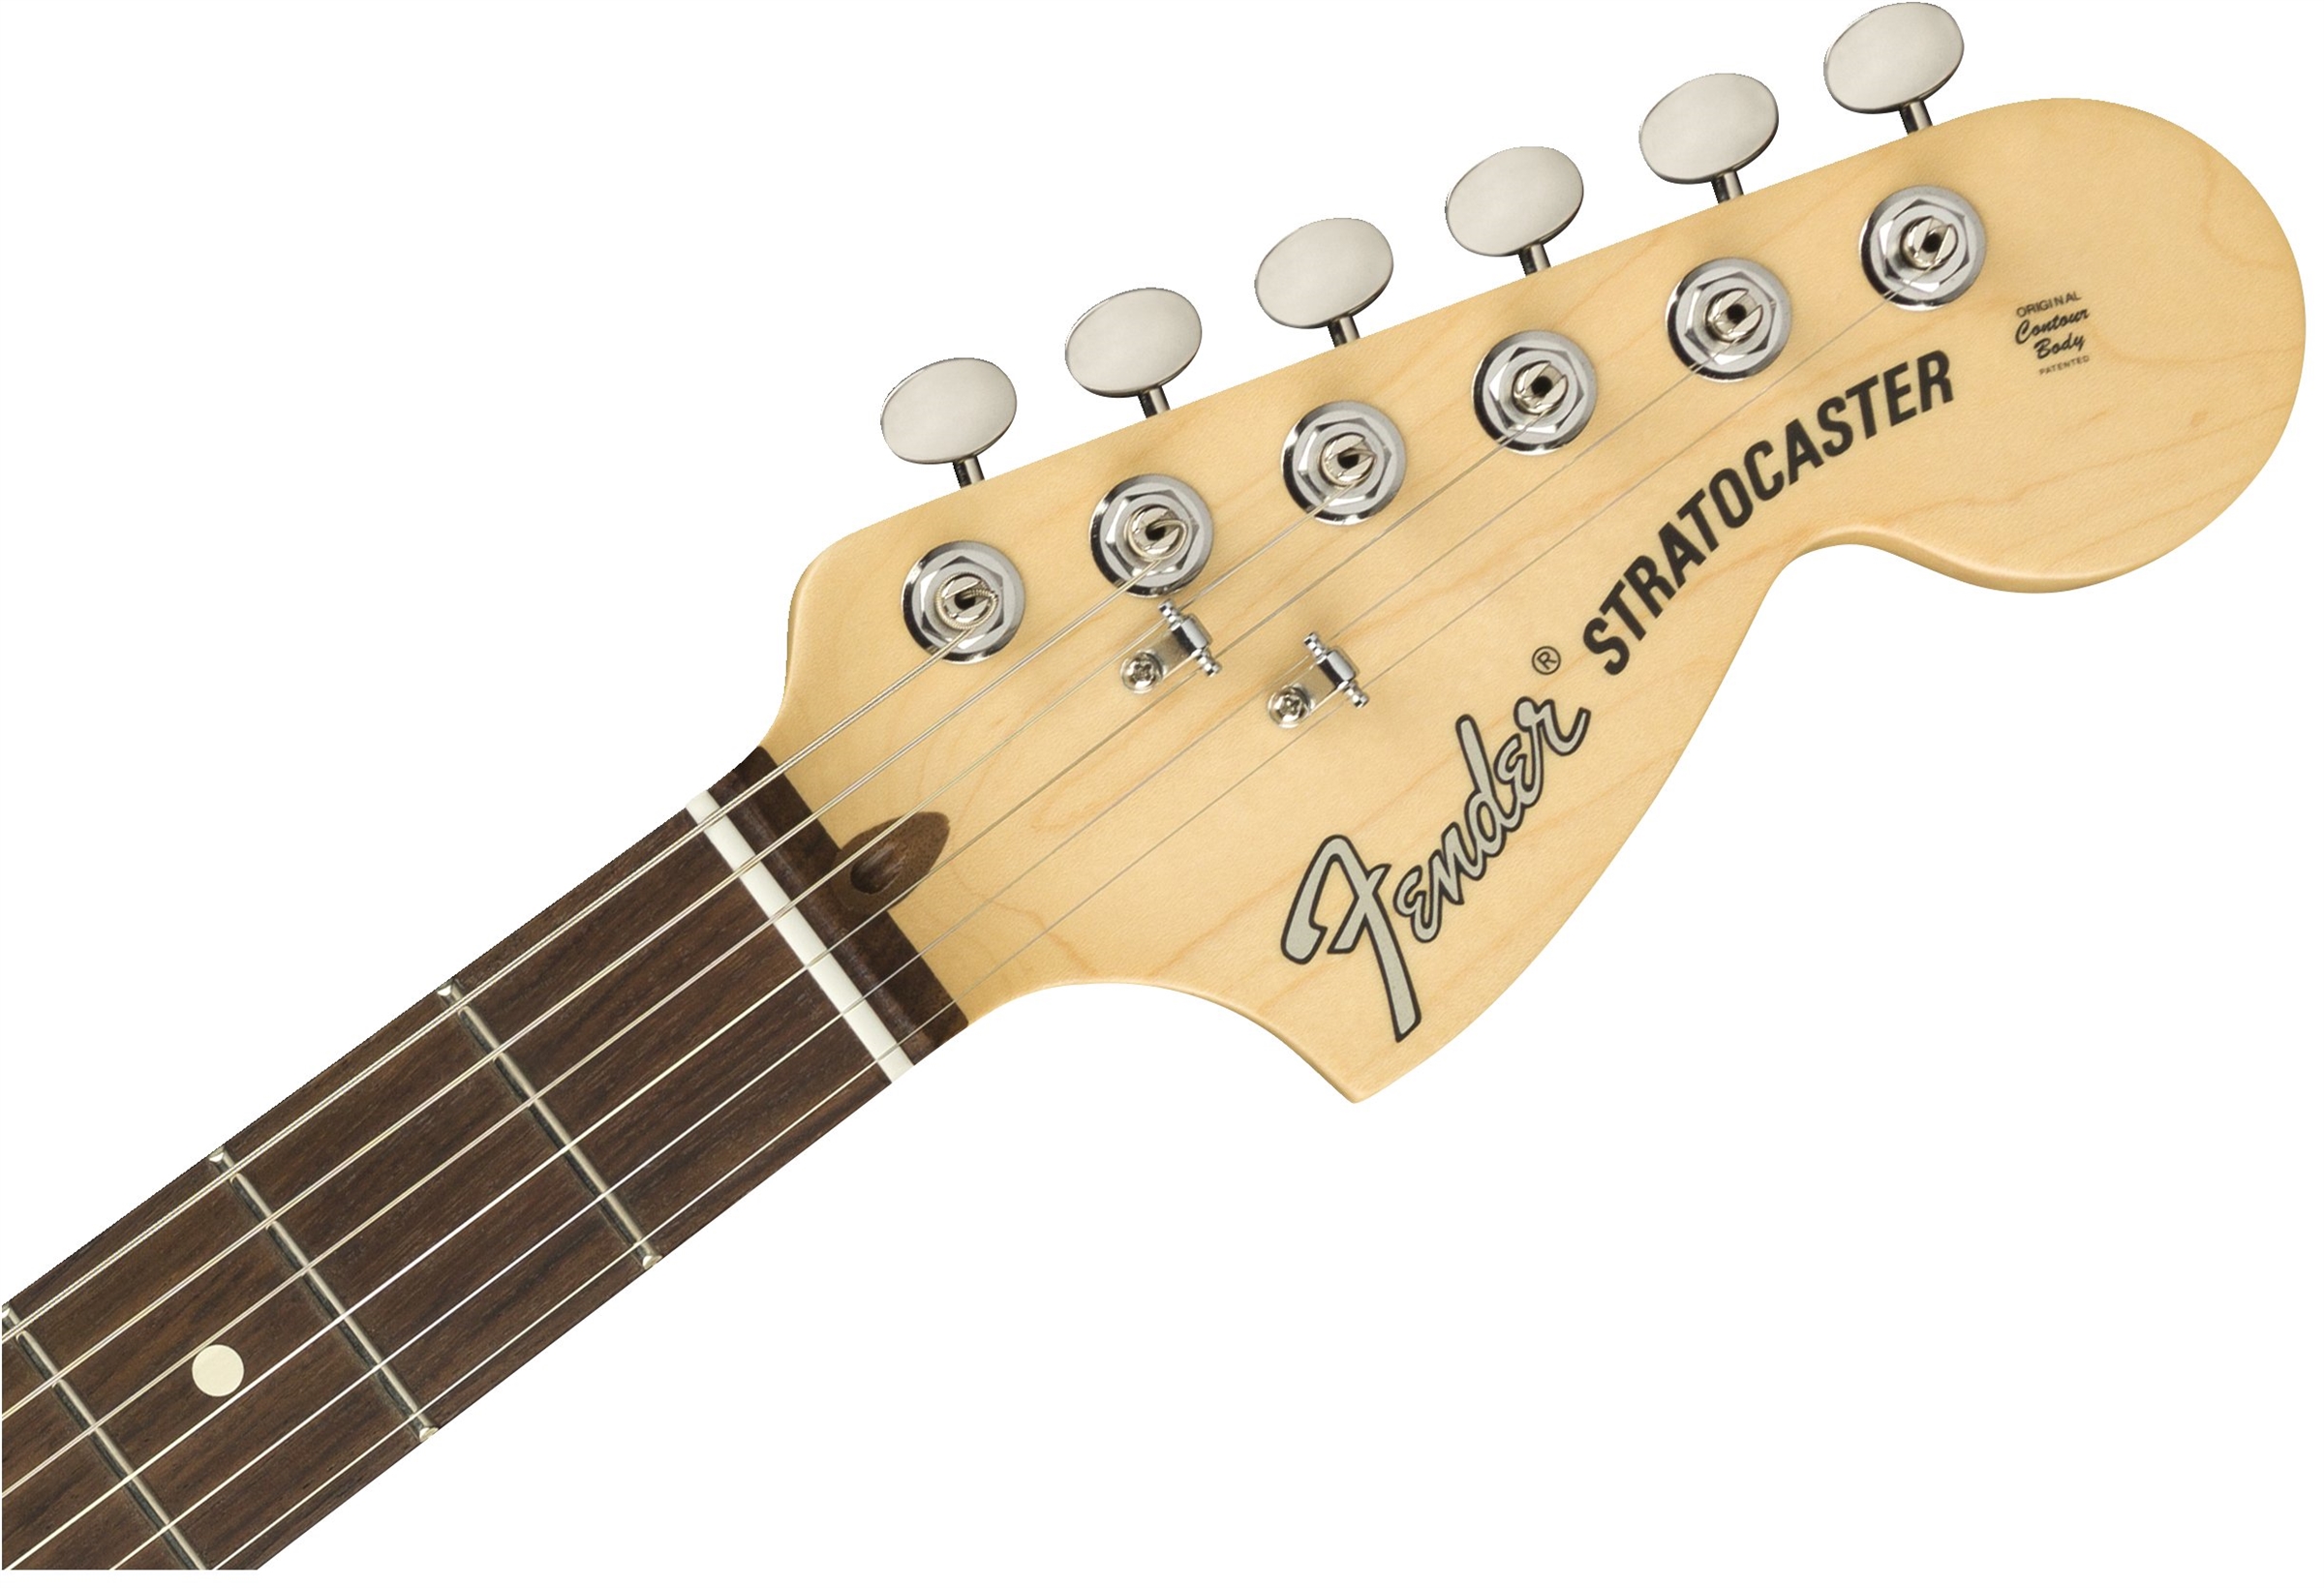 American Performer Stratocaster Honey Burstヘッド画像